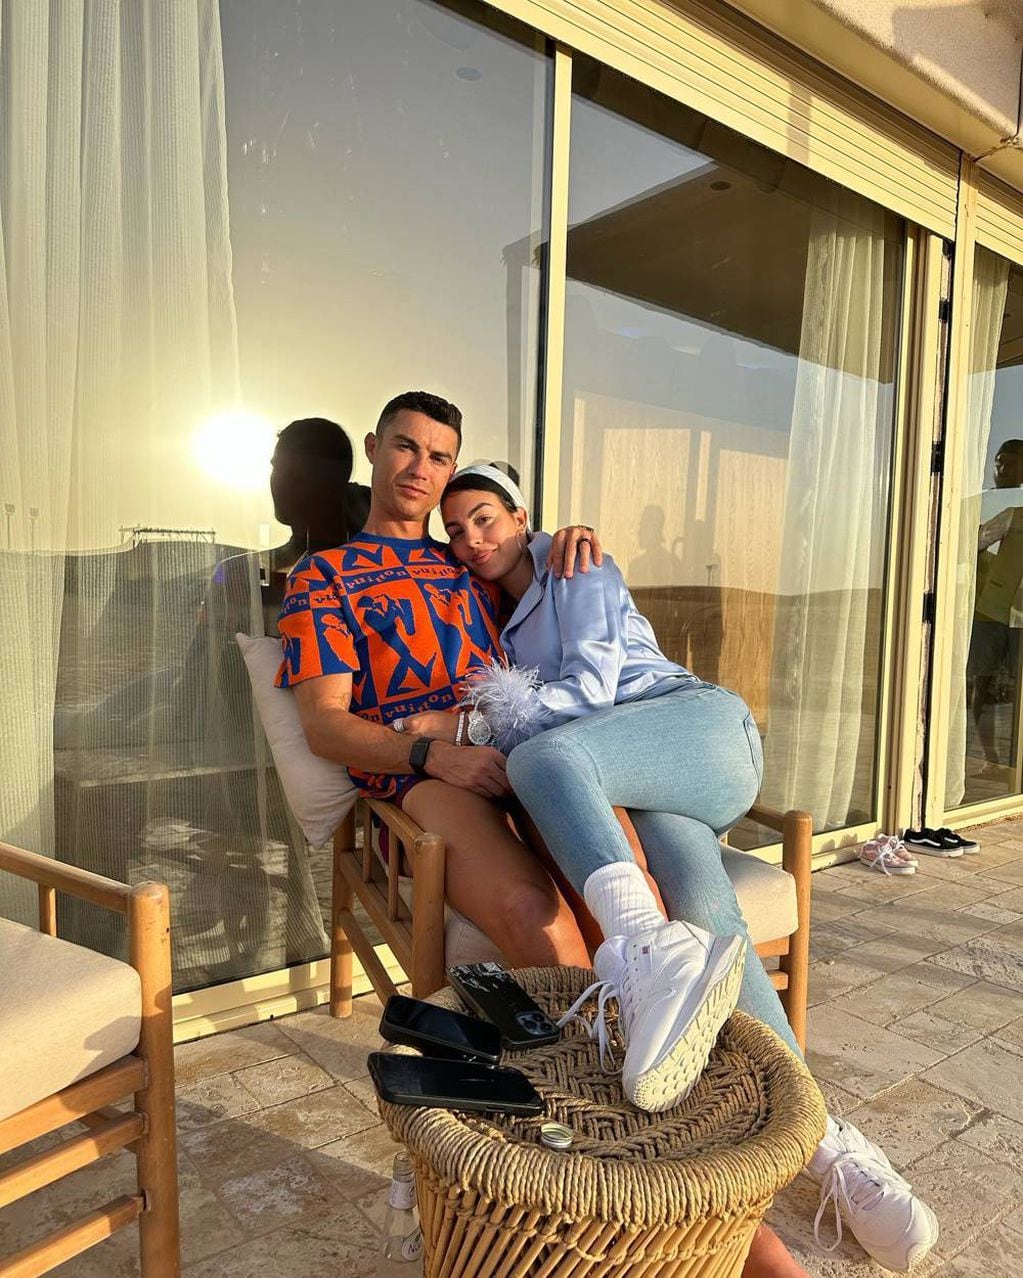 Cristiano Ronaldo y Georgina Rodríguez son una de las parejas más conocidas. / Foto: Instagram